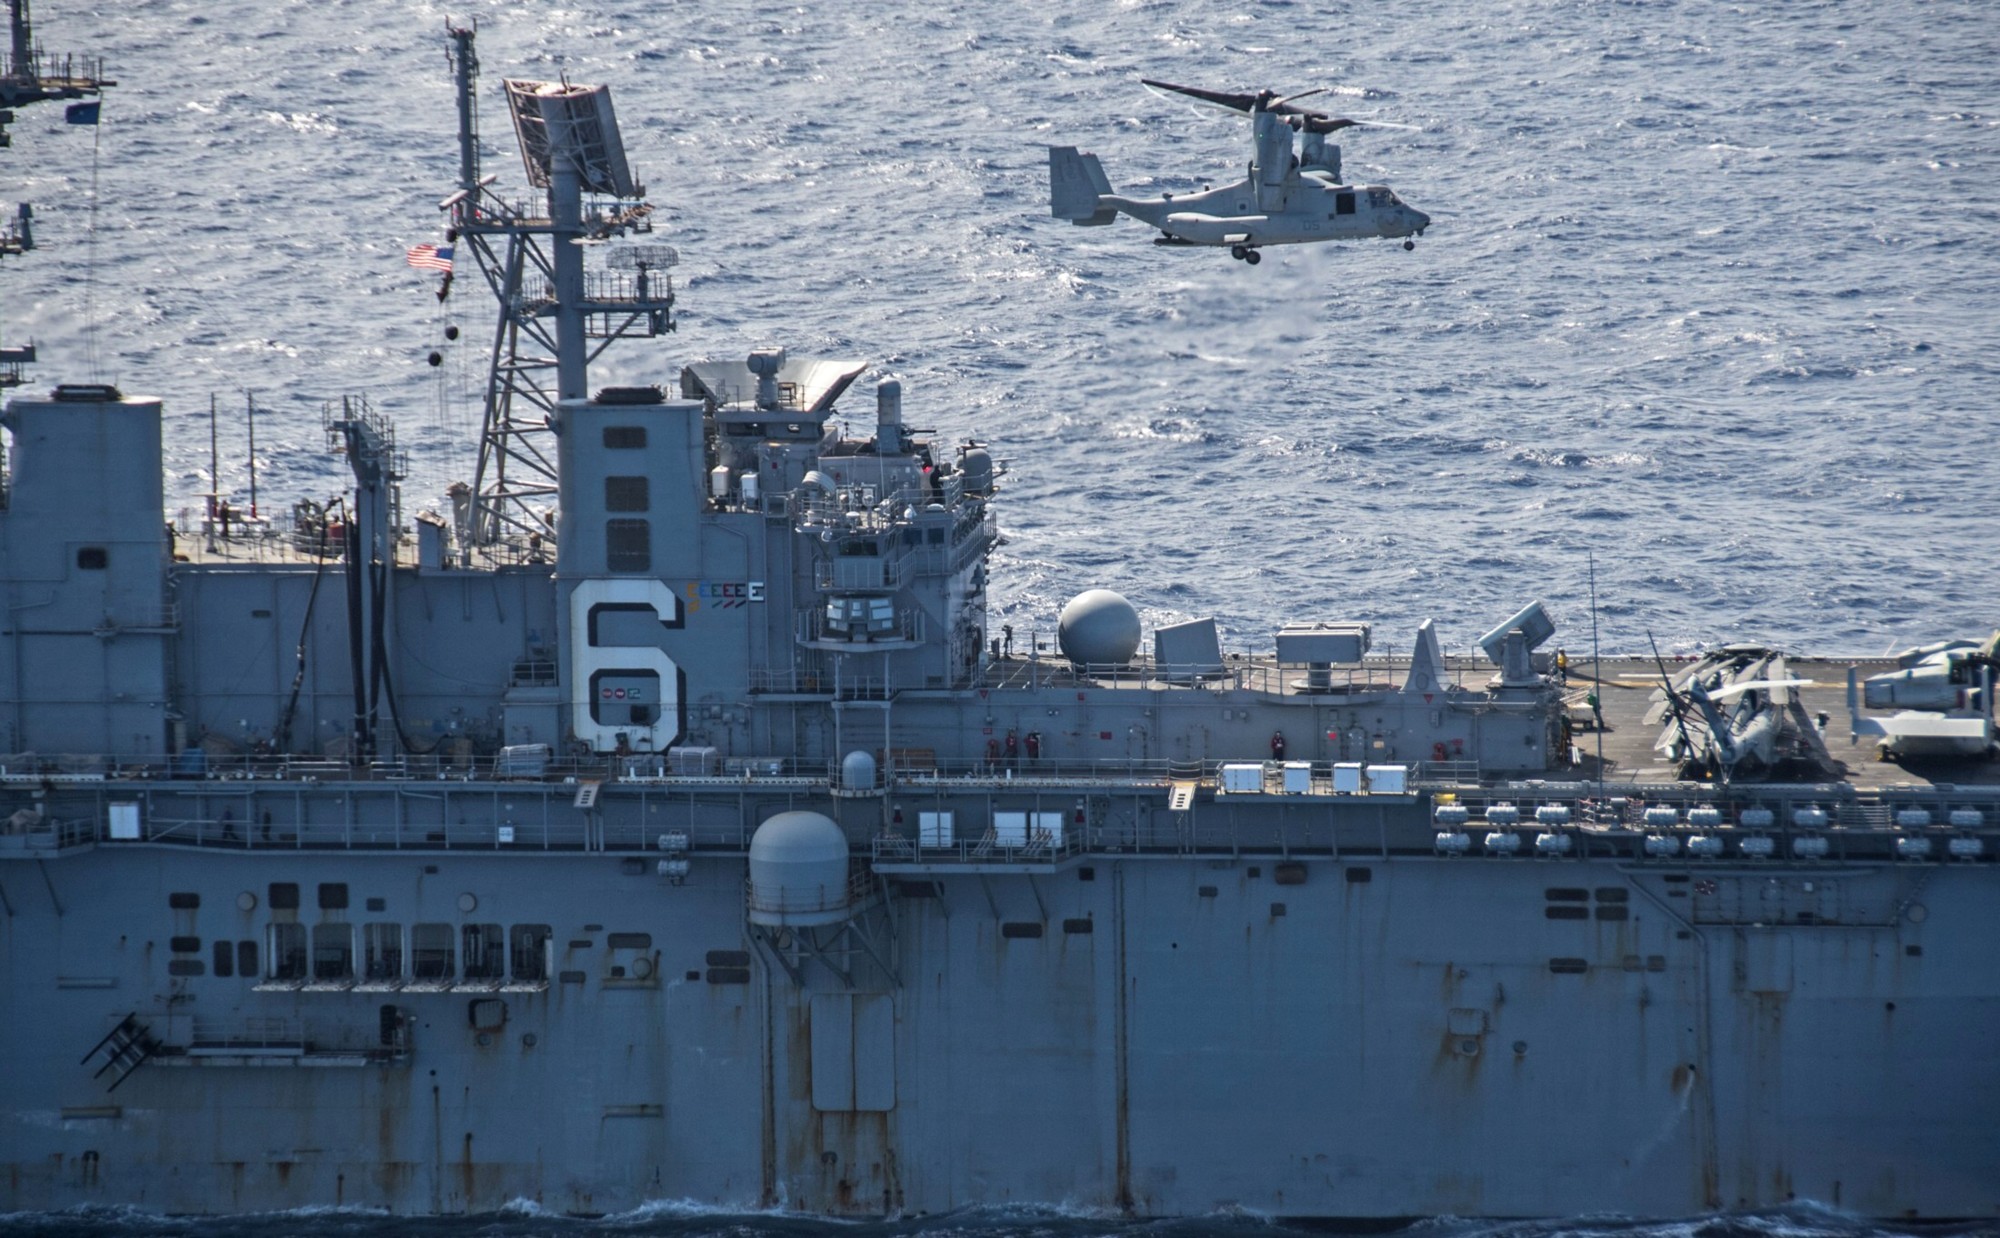 lhd-6 uss bonhomme richard amphibious assault ship landing helicopter dock wasp class 78